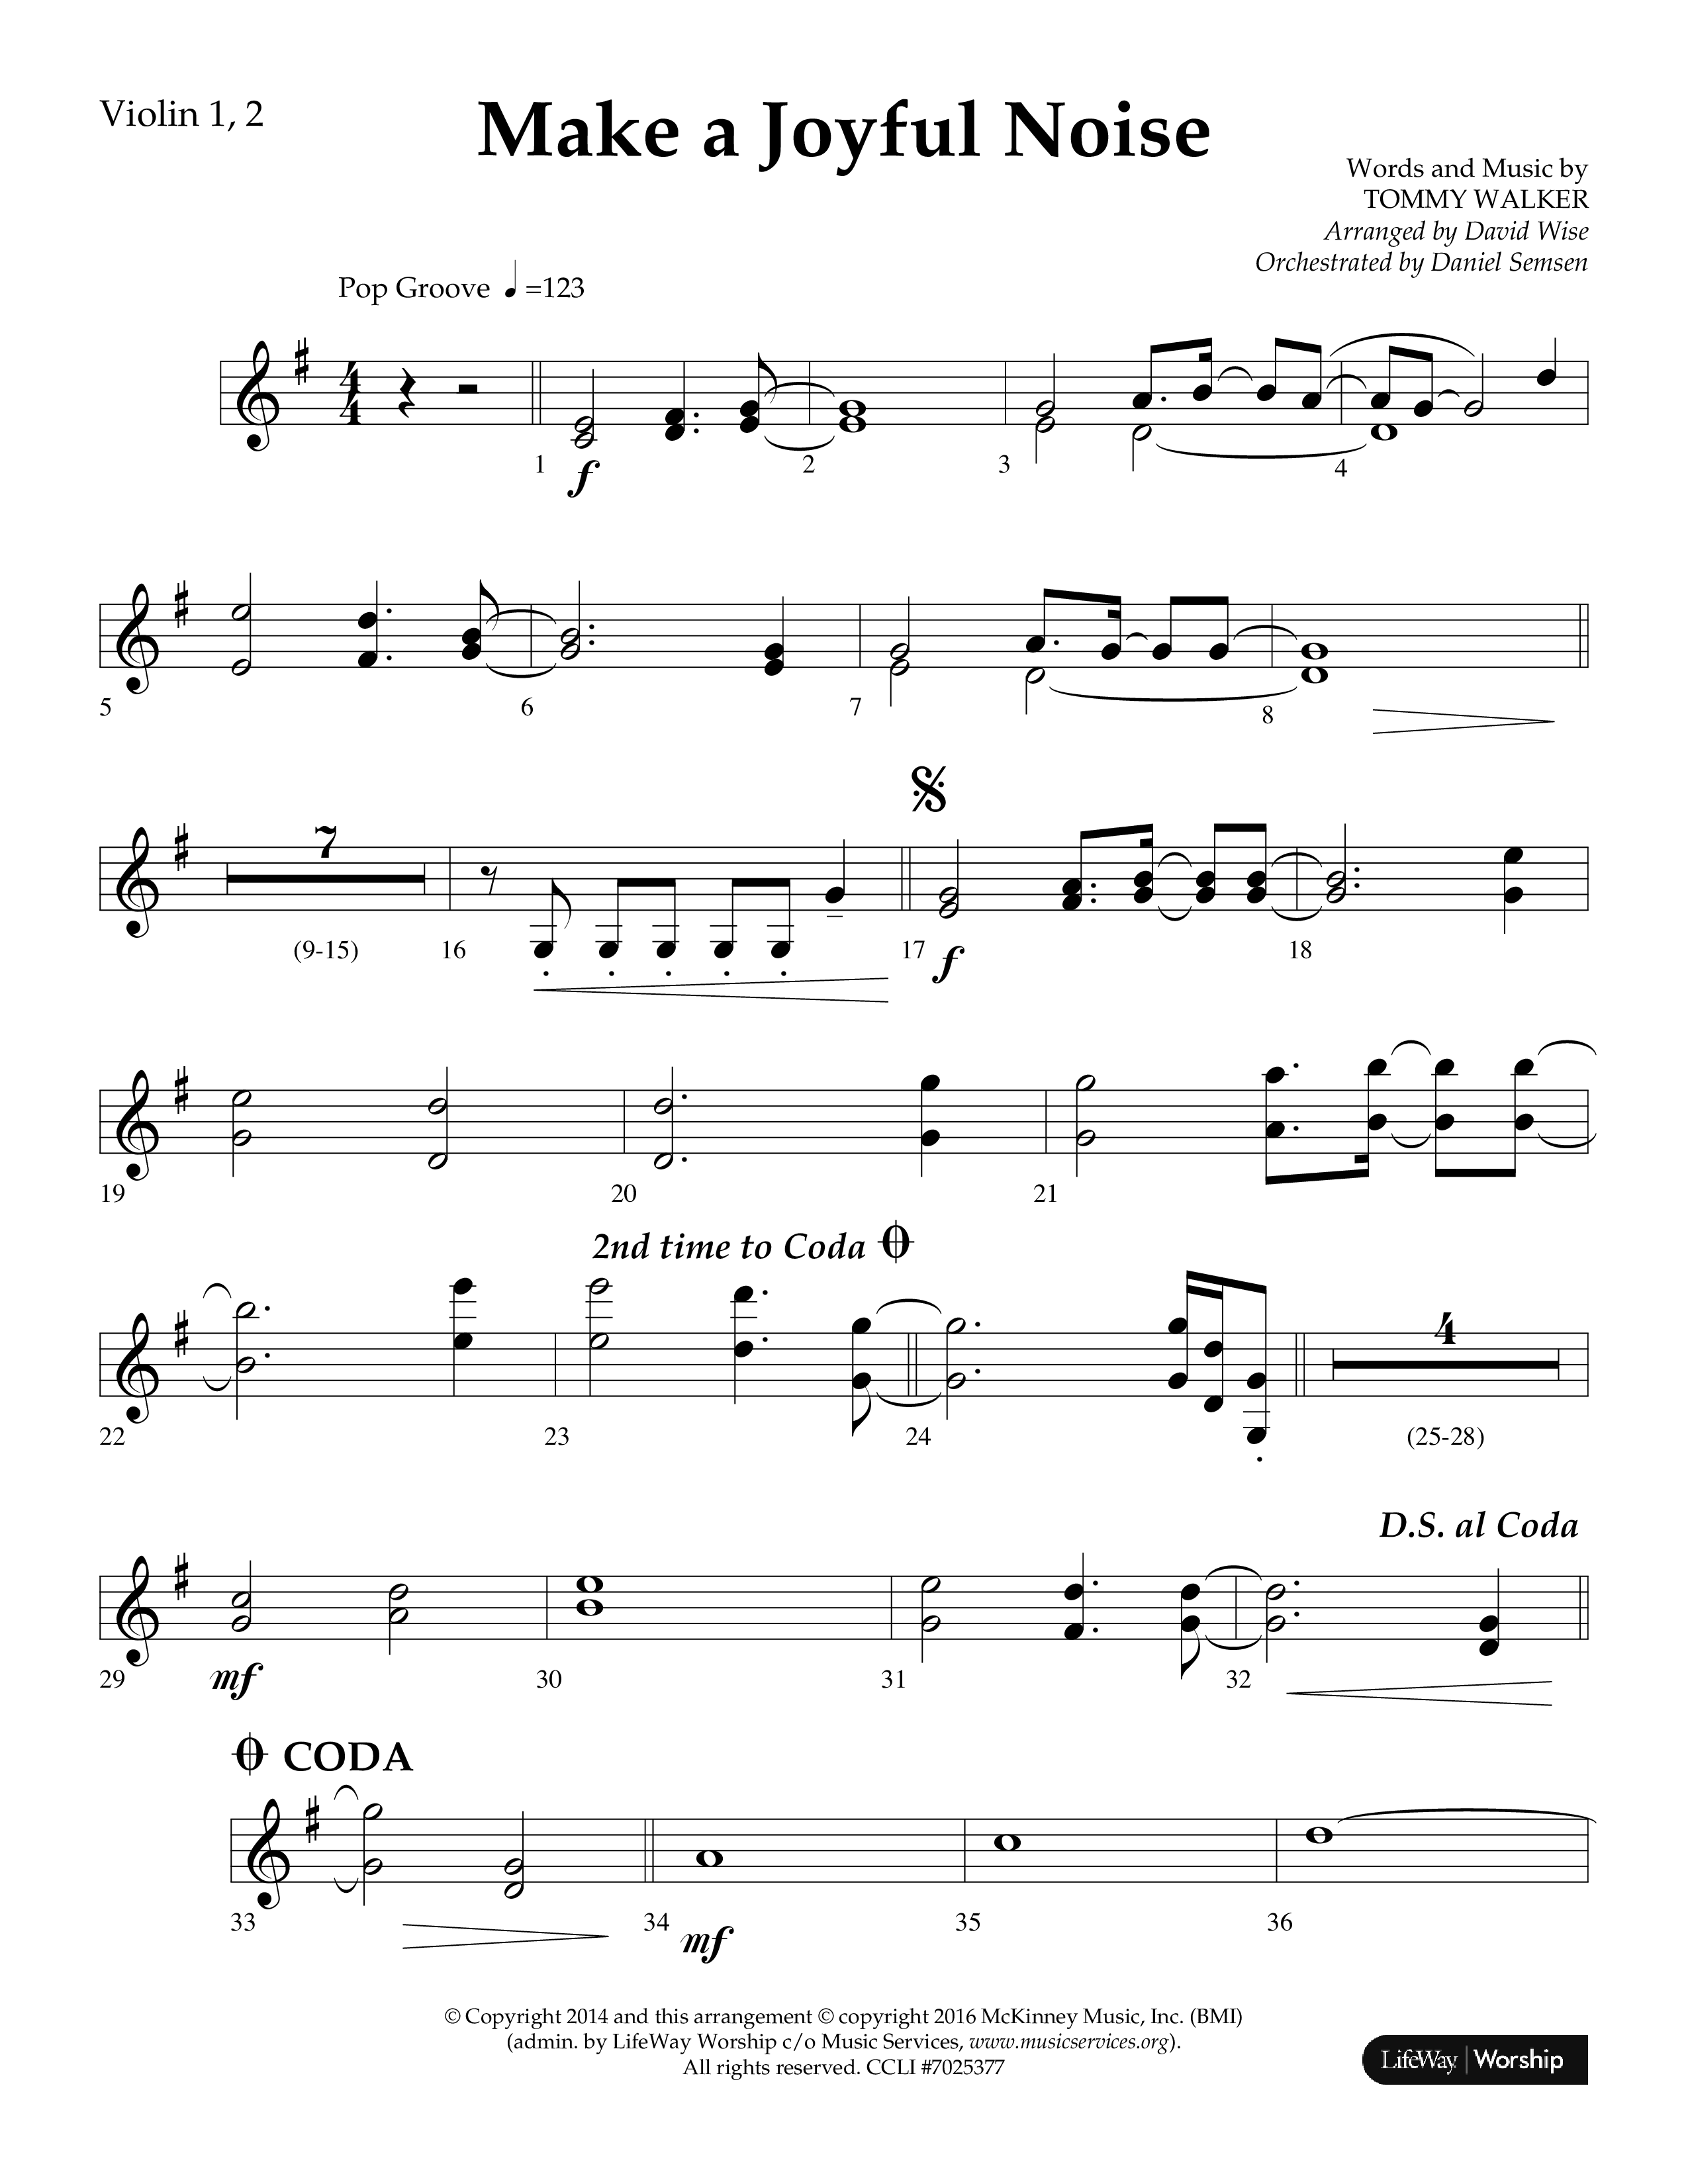 Make A Joyful Noise (Choral Anthem SATB) Violin 1/2 (Lifeway Choral / Arr. David Wise / Orch. Daniel Semsen)